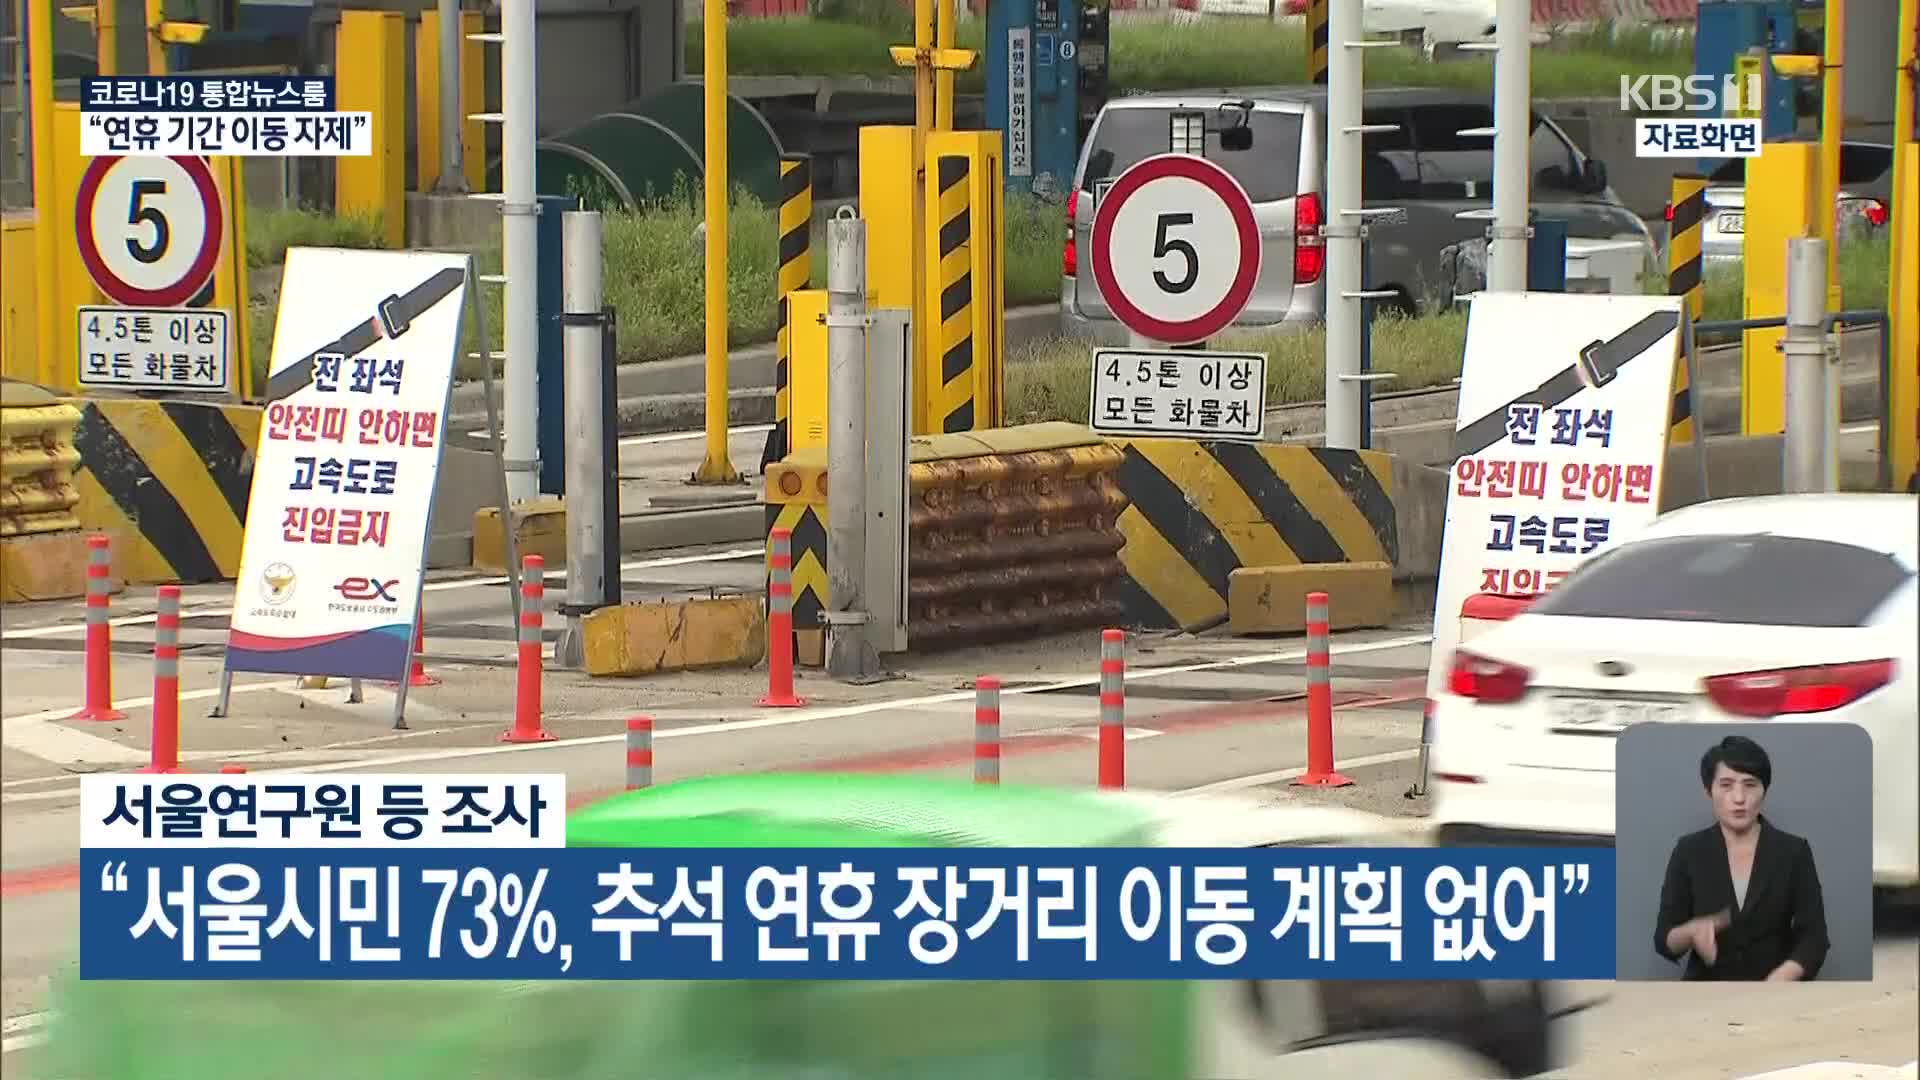 “서울시민 73%, 추석 연휴 장거리 이동 계획 없어”